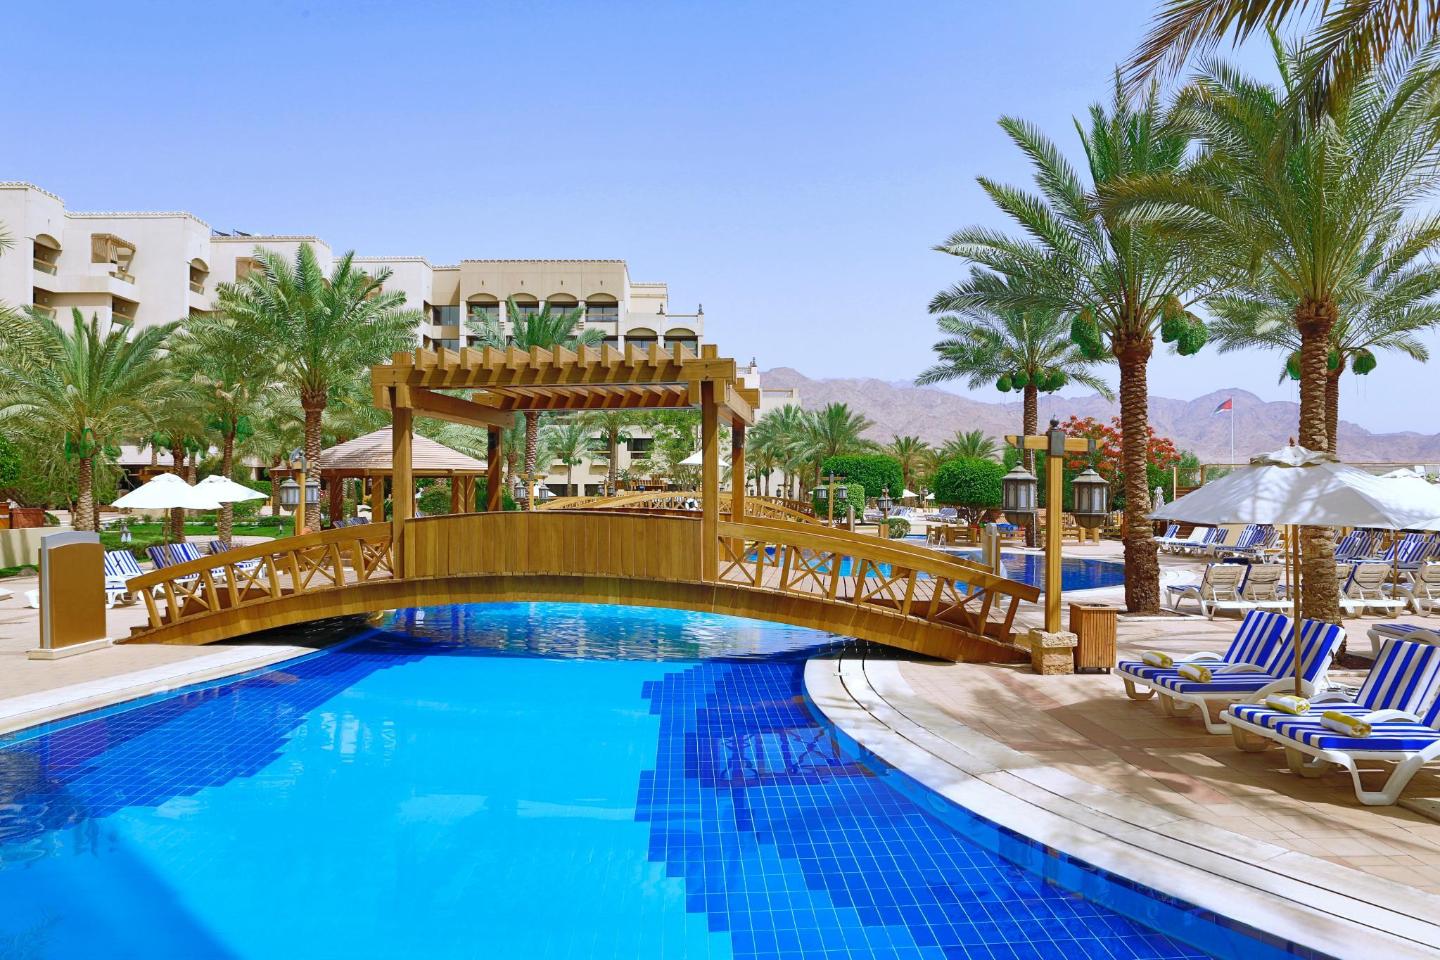 indarbejde Placeret Med det samme The 10 best resorts in Aqaba, Jordan | Booking.com